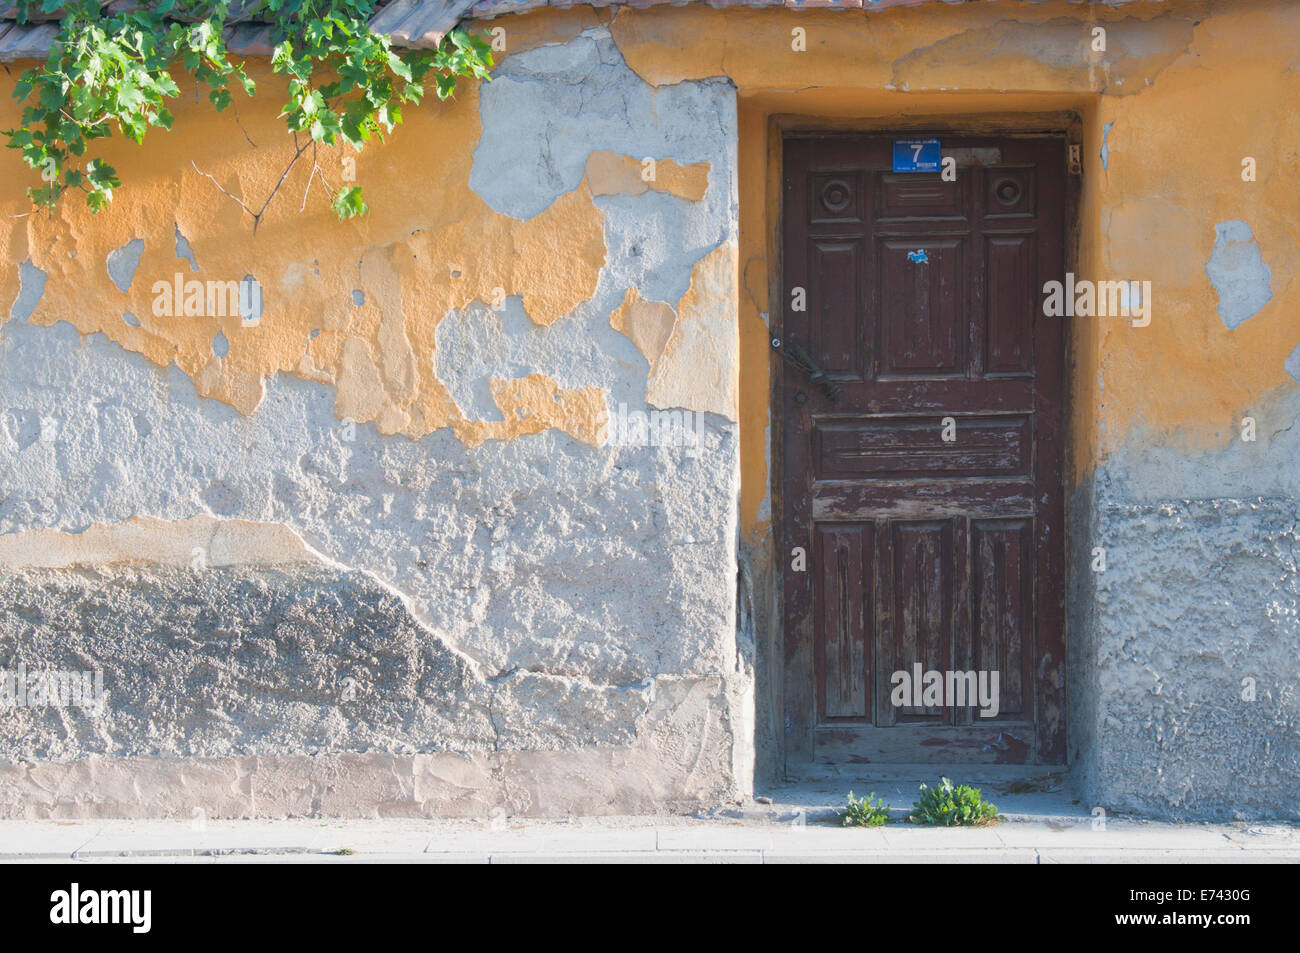 Un mur avec des travaux de plâtre jaune écaillée et une porte en bois de Konya, Turquie Banque D'Images